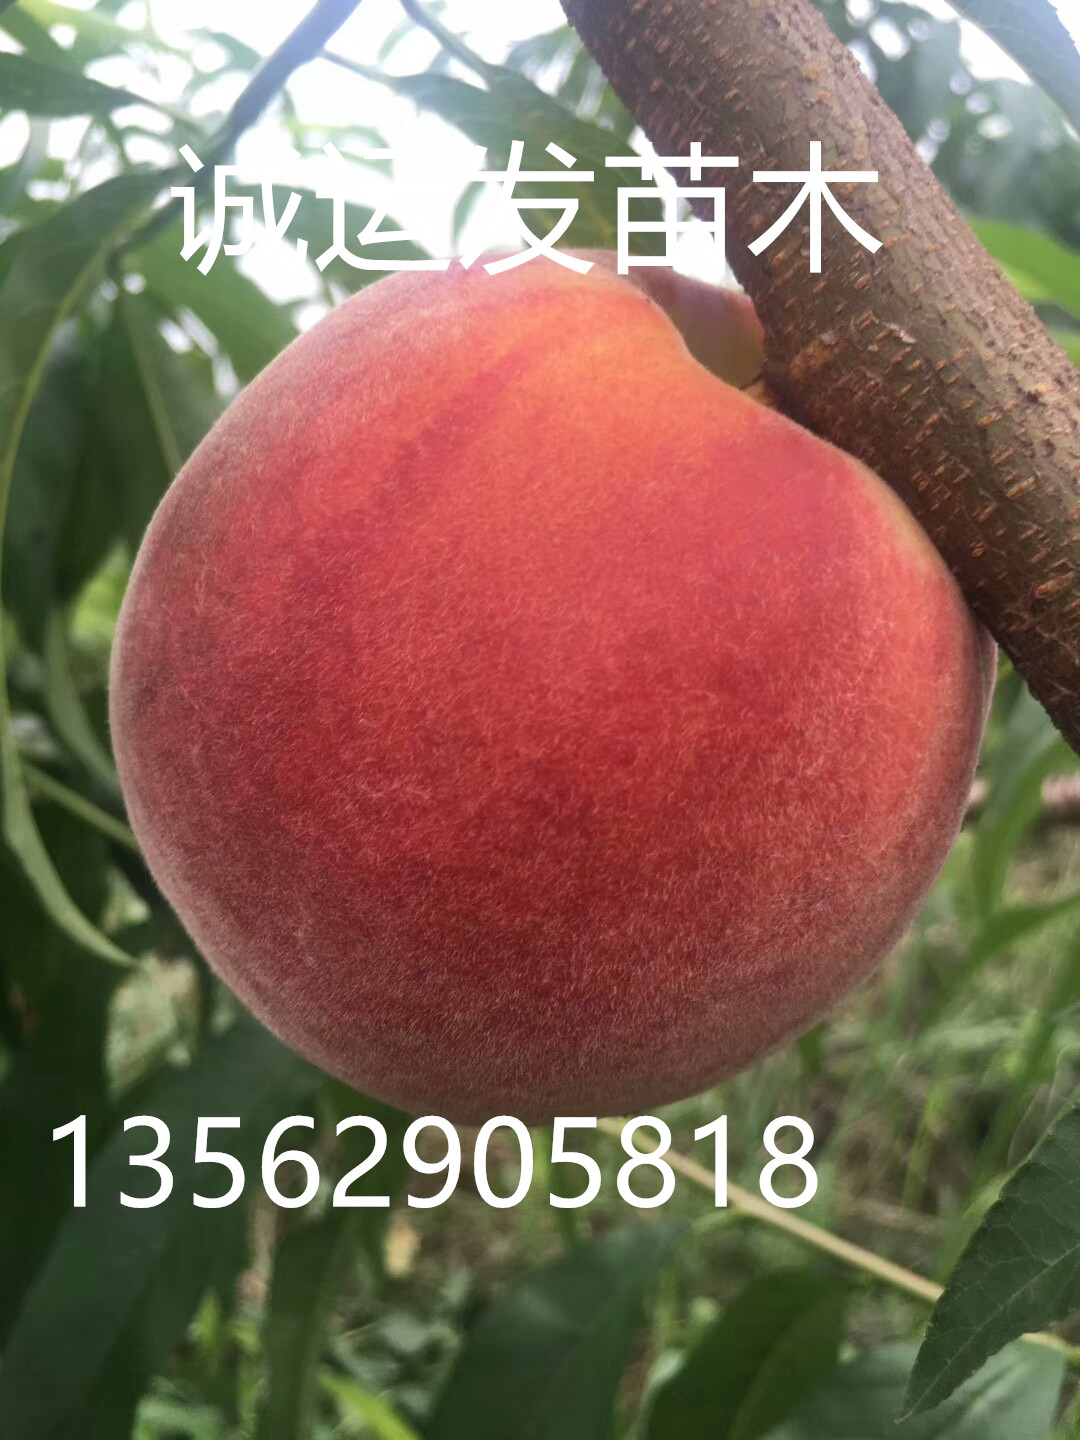 83黄桃跟19黄桃区别七月份成熟的桃品种